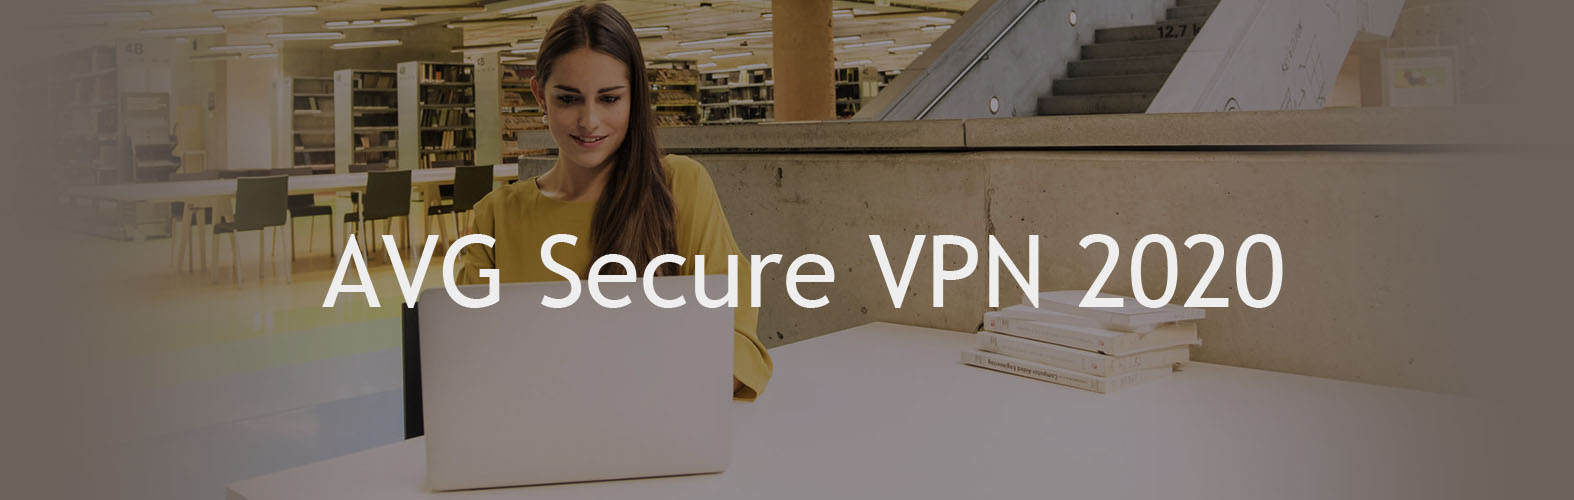 AVG Secure VPN 2020